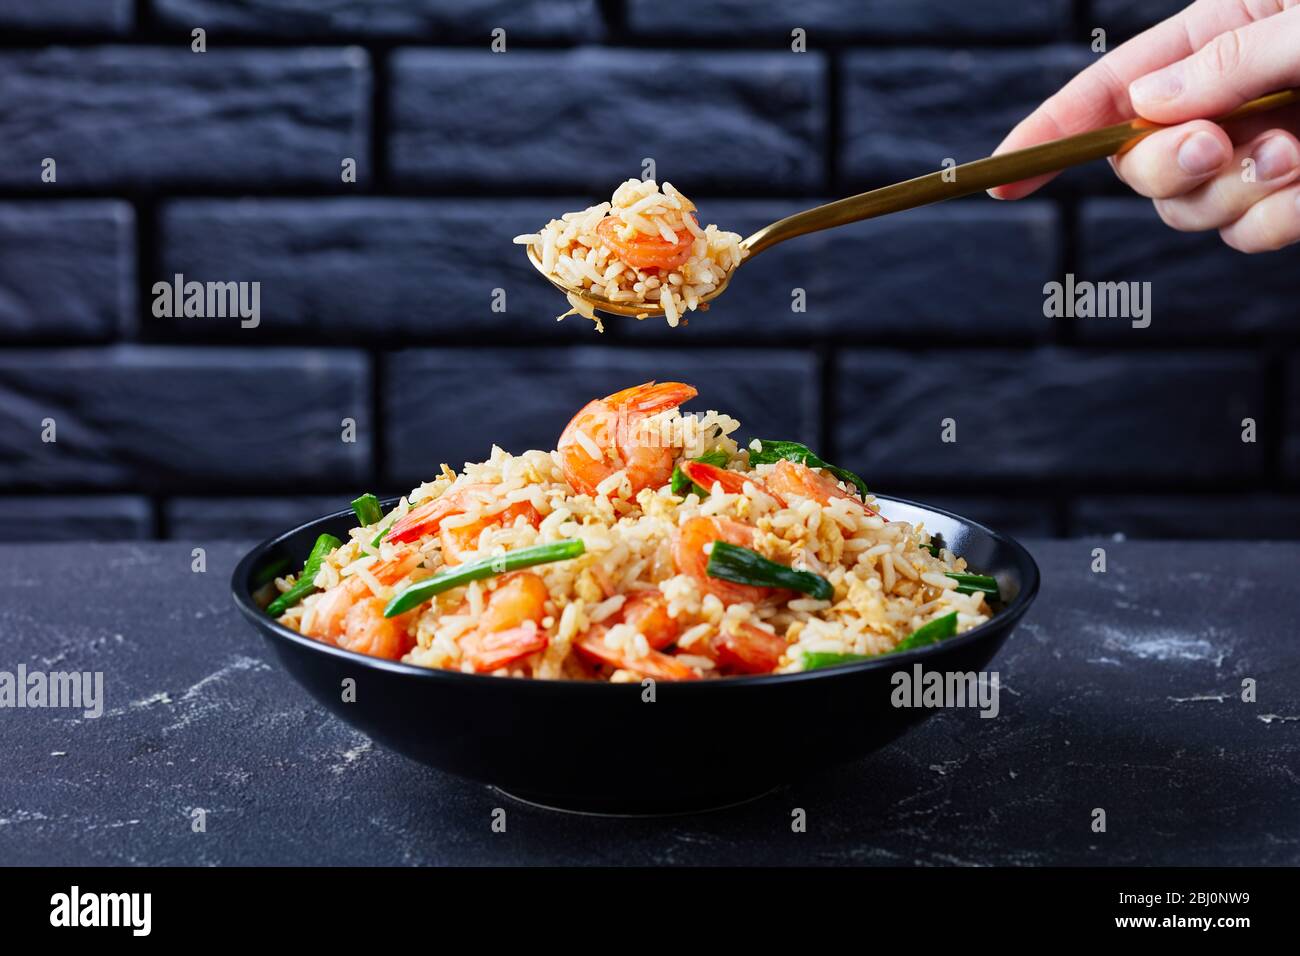 La main de la femme tient la cuillère avec du riz au jasmin frit asiatique avec des œufs brouillés aux crevettes et des oignons de printemps avec sauce thaï sur un fond en béton foncé Banque D'Images